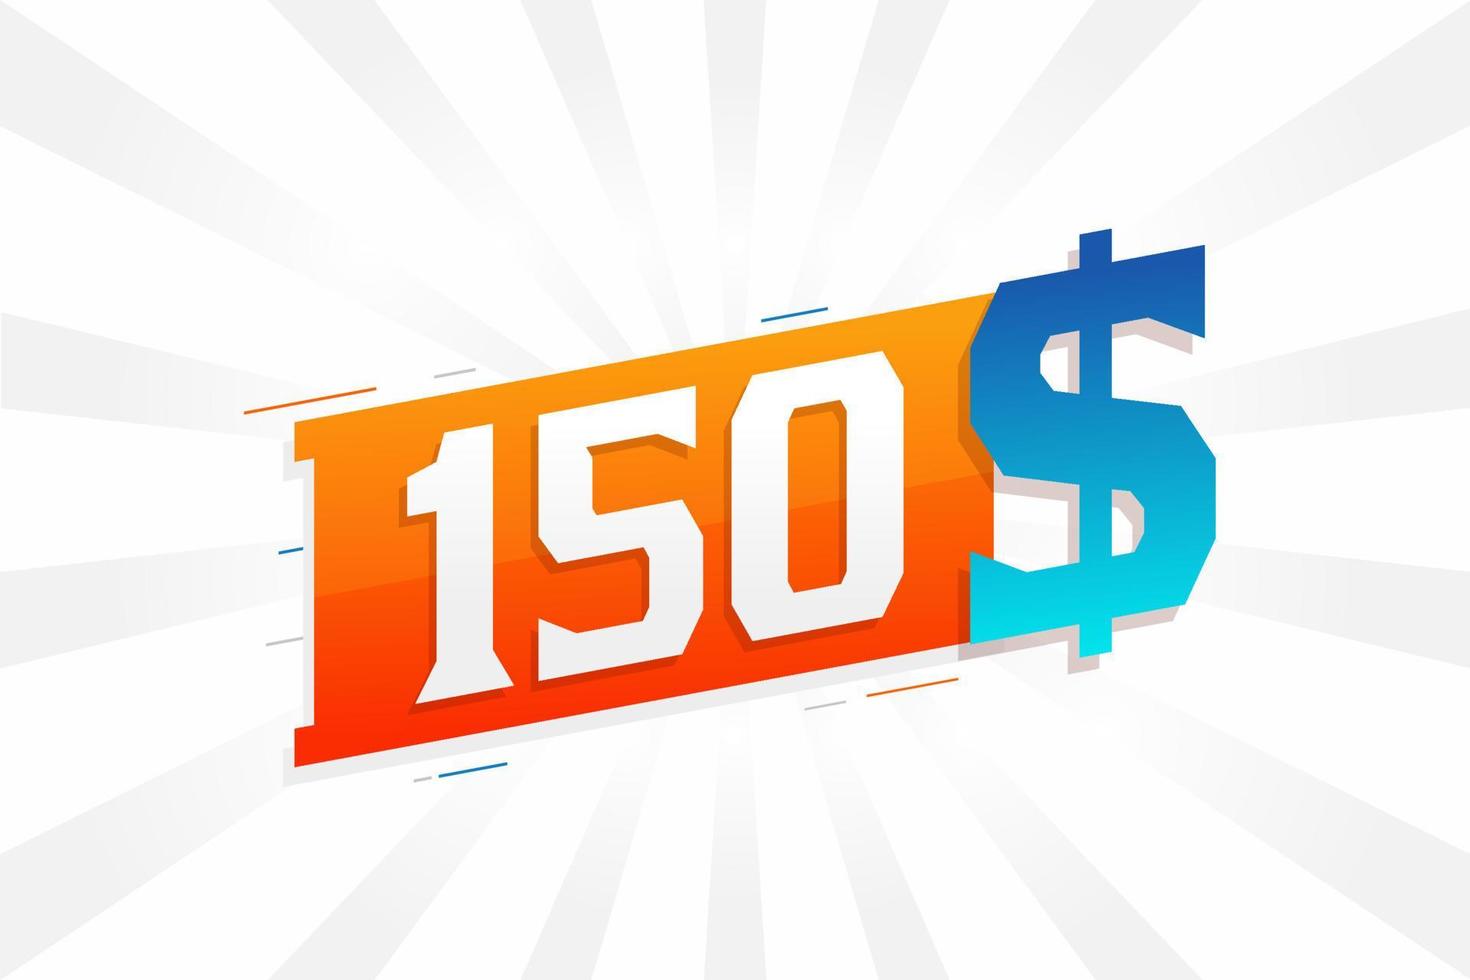 Symbole de texte vectoriel de devise de 150 dollars. 150 usd dollar des états unis vecteur de stock d'argent américain